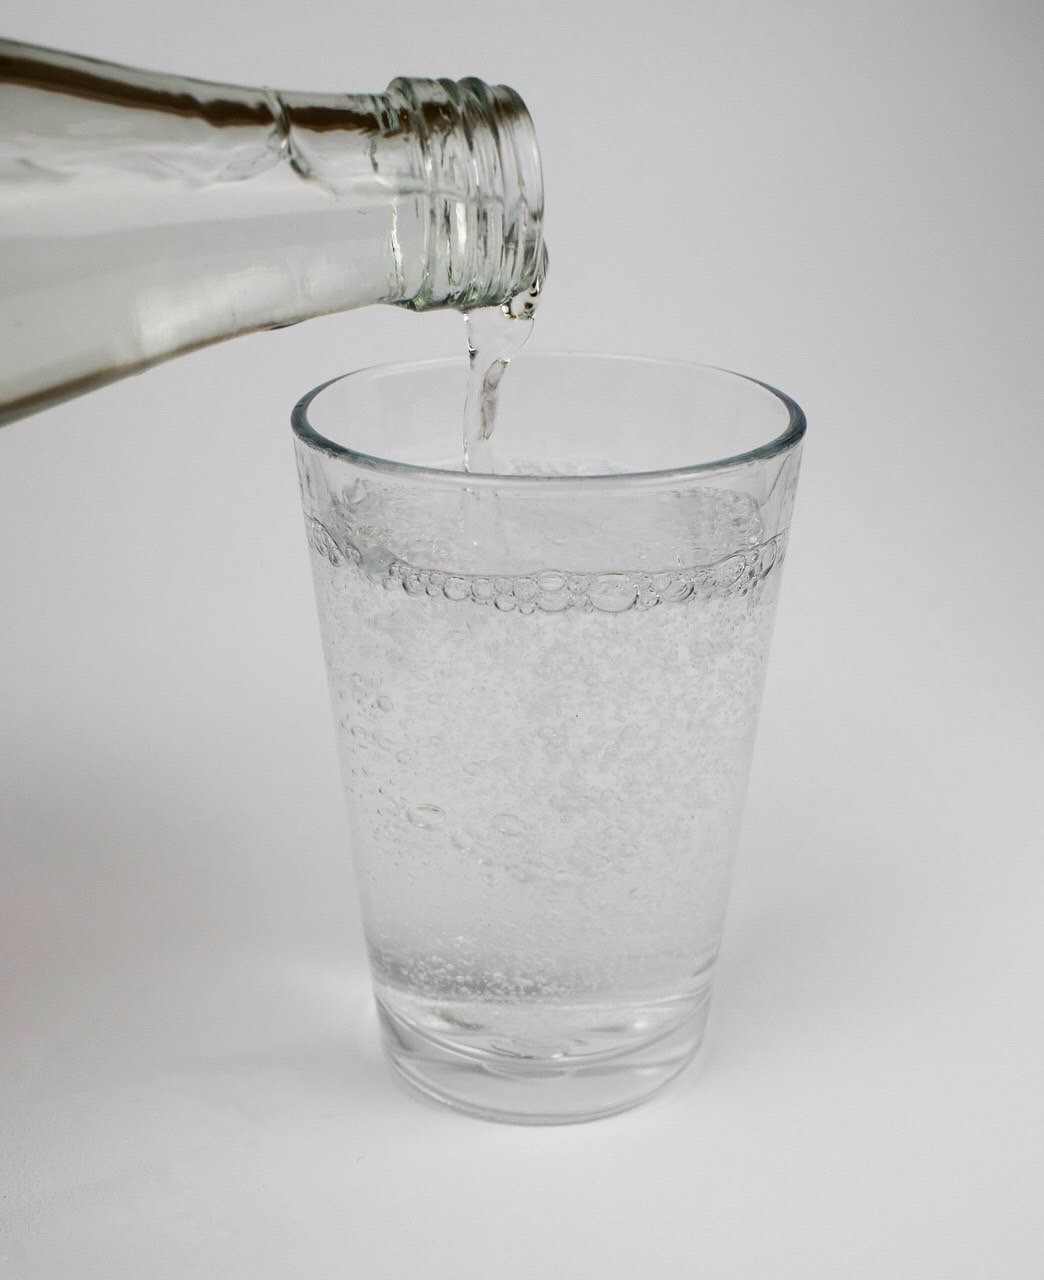 氣泡水水可以當水喝嗎